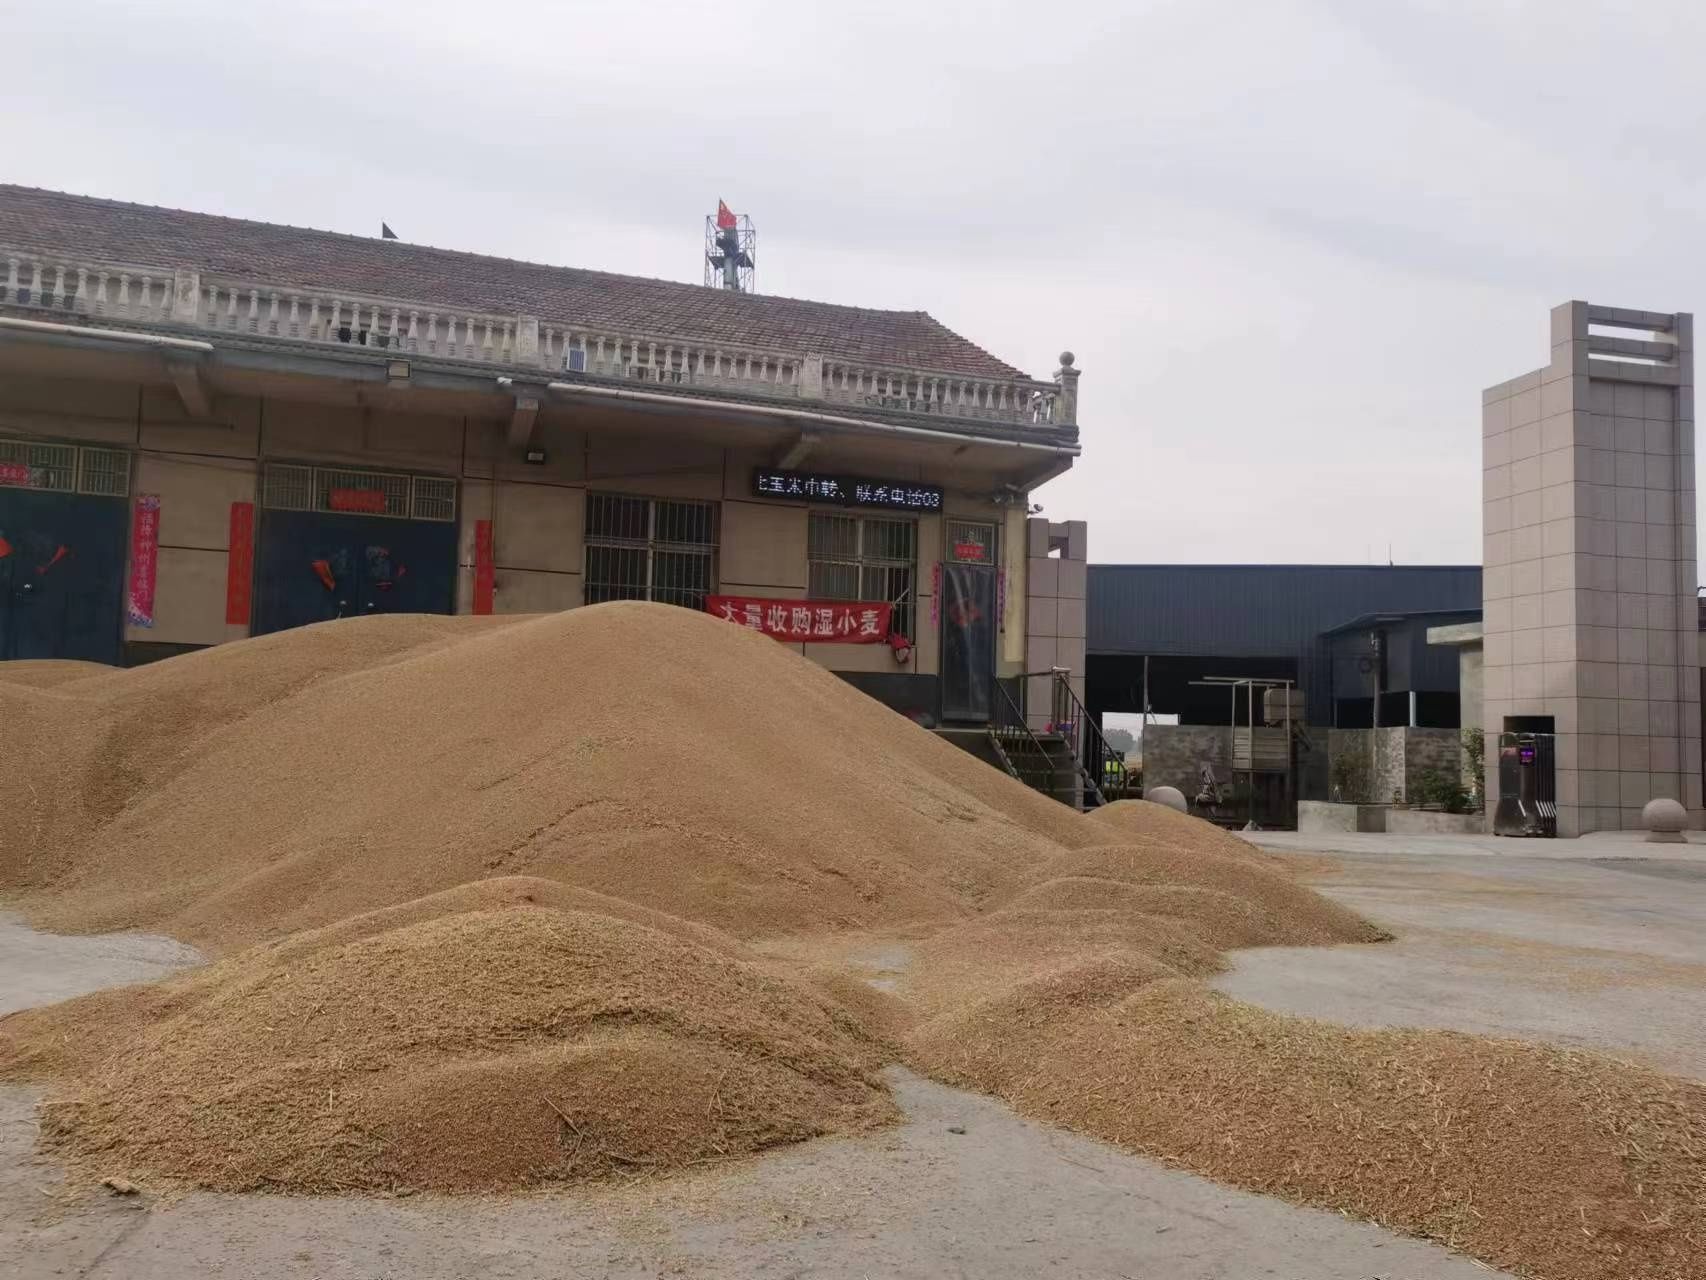 夏粮收购正进行，粮食收购商：今年小麦质量差别大，不好定价，5分钱都算大波动